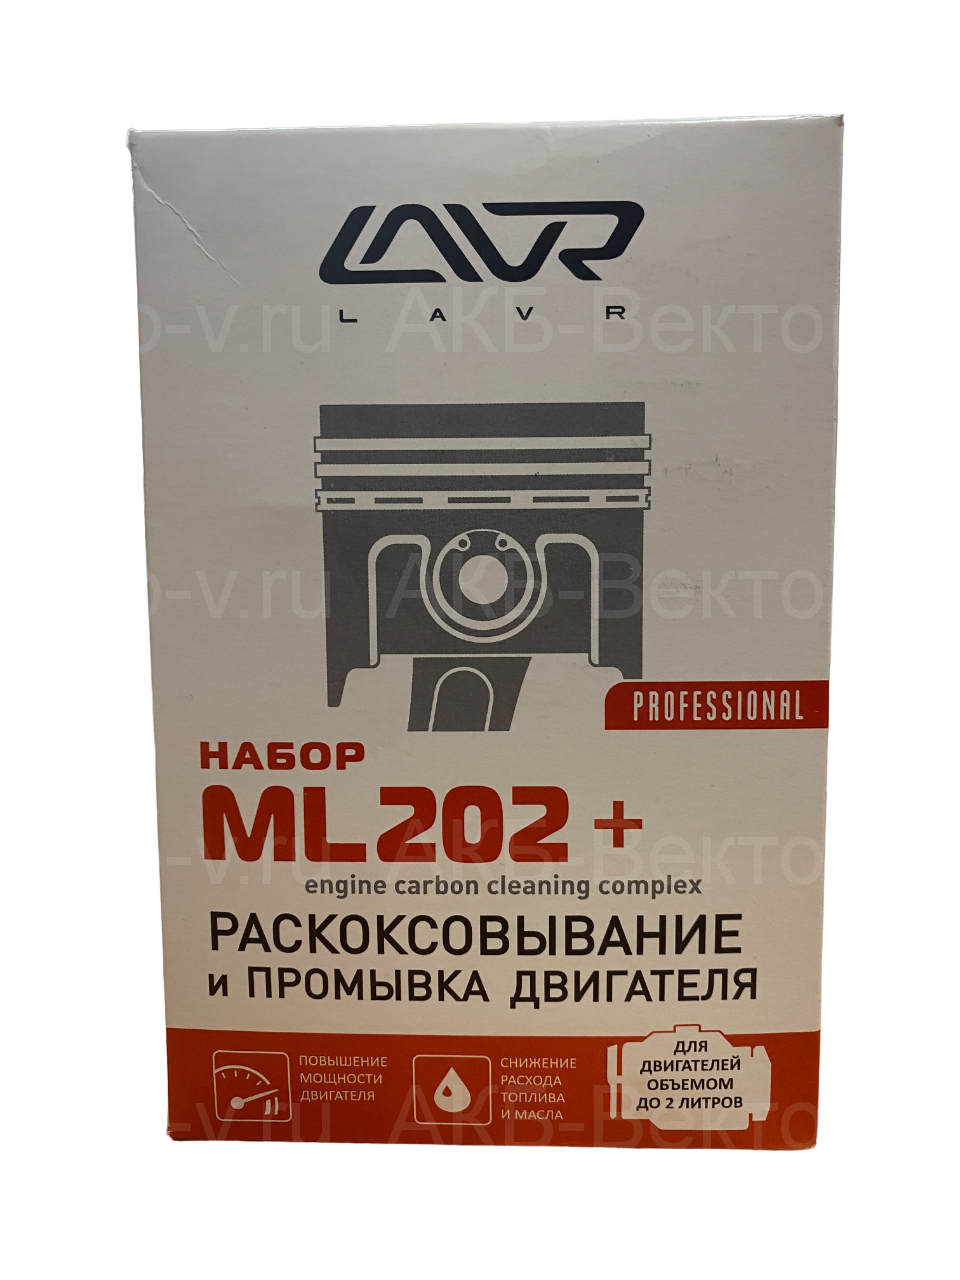 LN2505 Набор: Раскоксовывание двигателя ML-202 + Промывка двигателя (для двигателей до 2-х литров 185мл/ 3